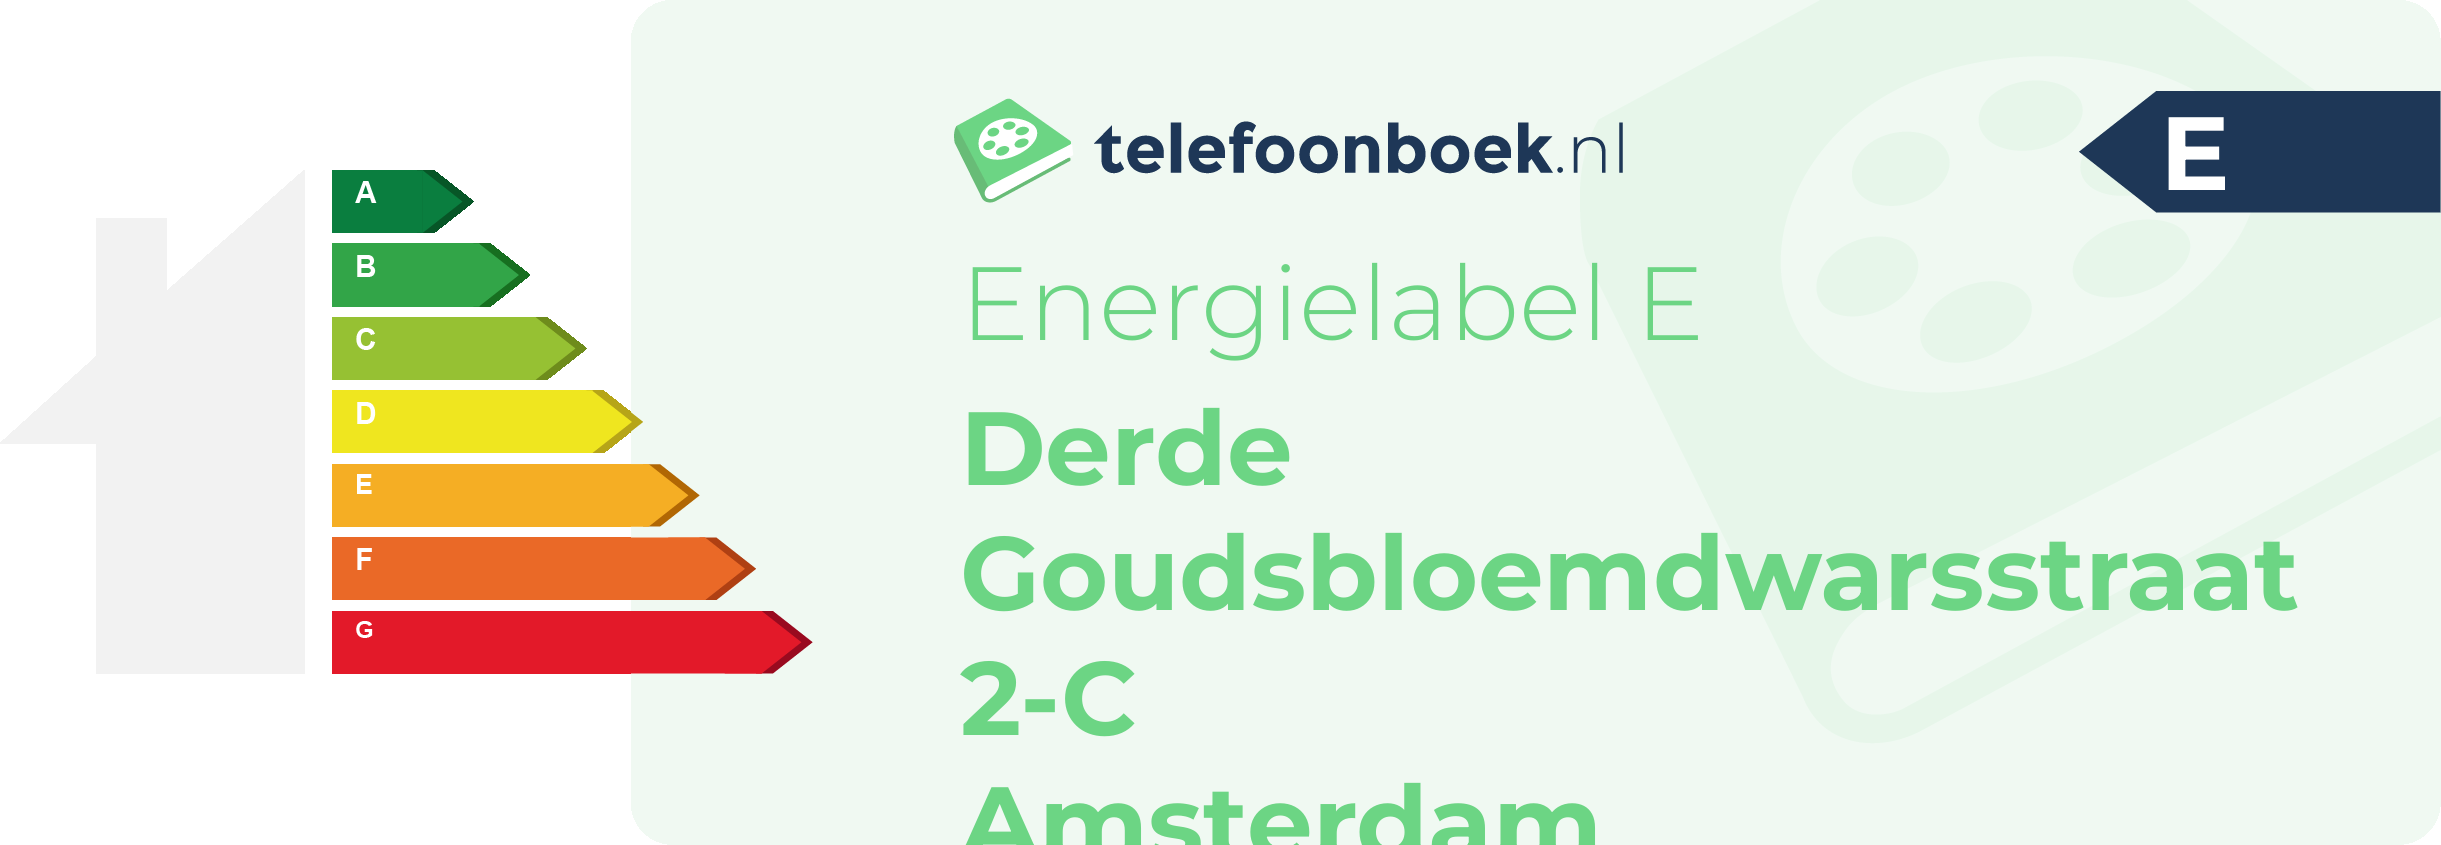 Energielabel Derde Goudsbloemdwarsstraat 2-C Amsterdam